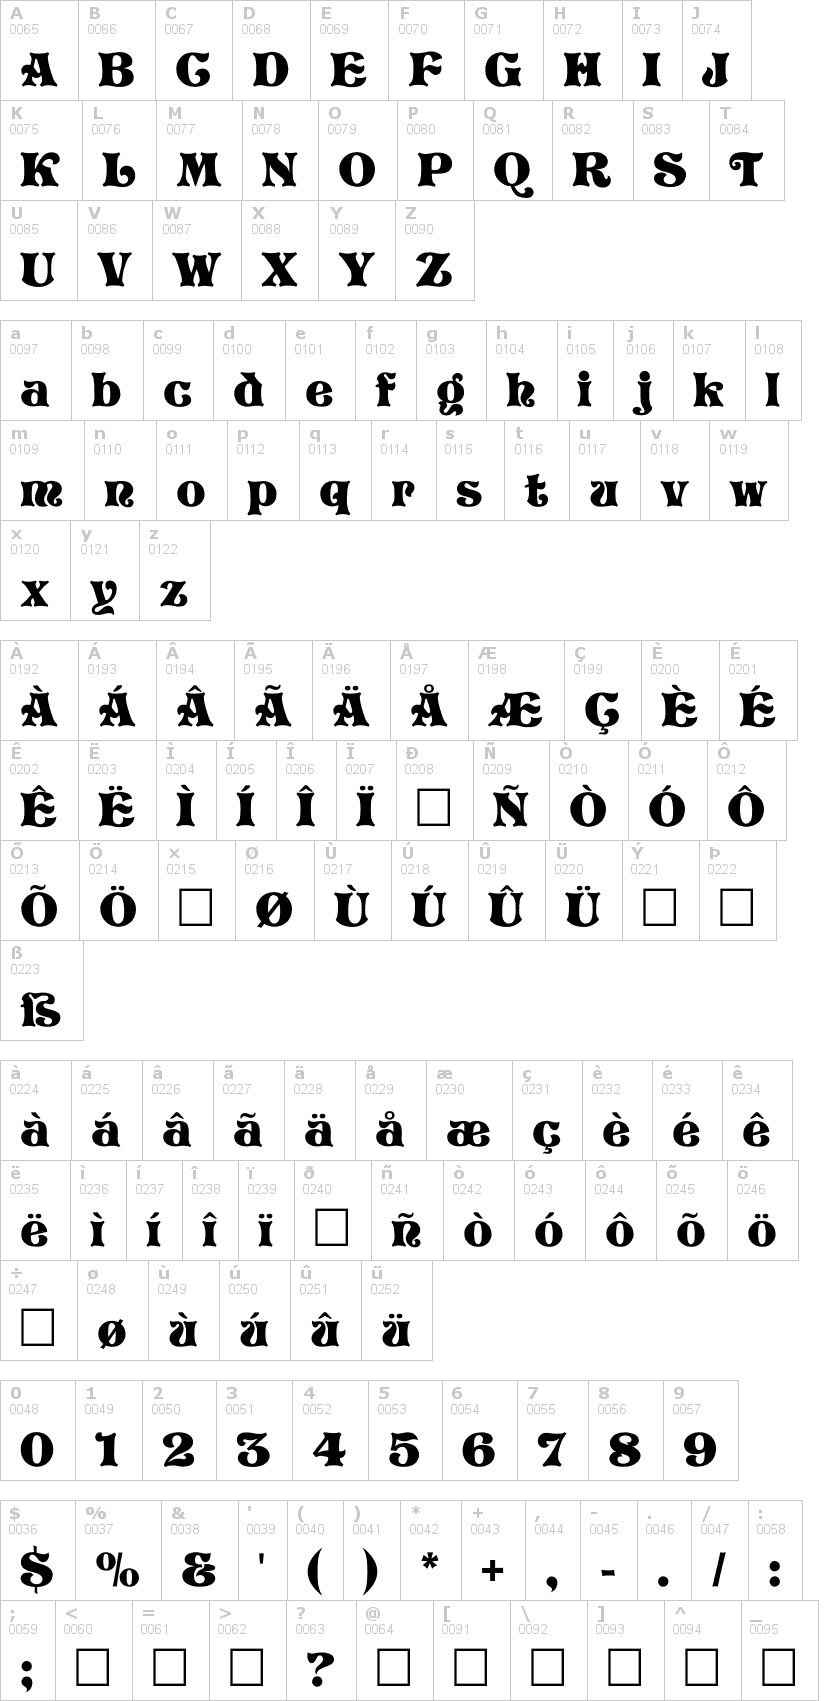 Lettere dell'alfabeto del font storybook con le quali è possibile realizzare adesivi prespaziati